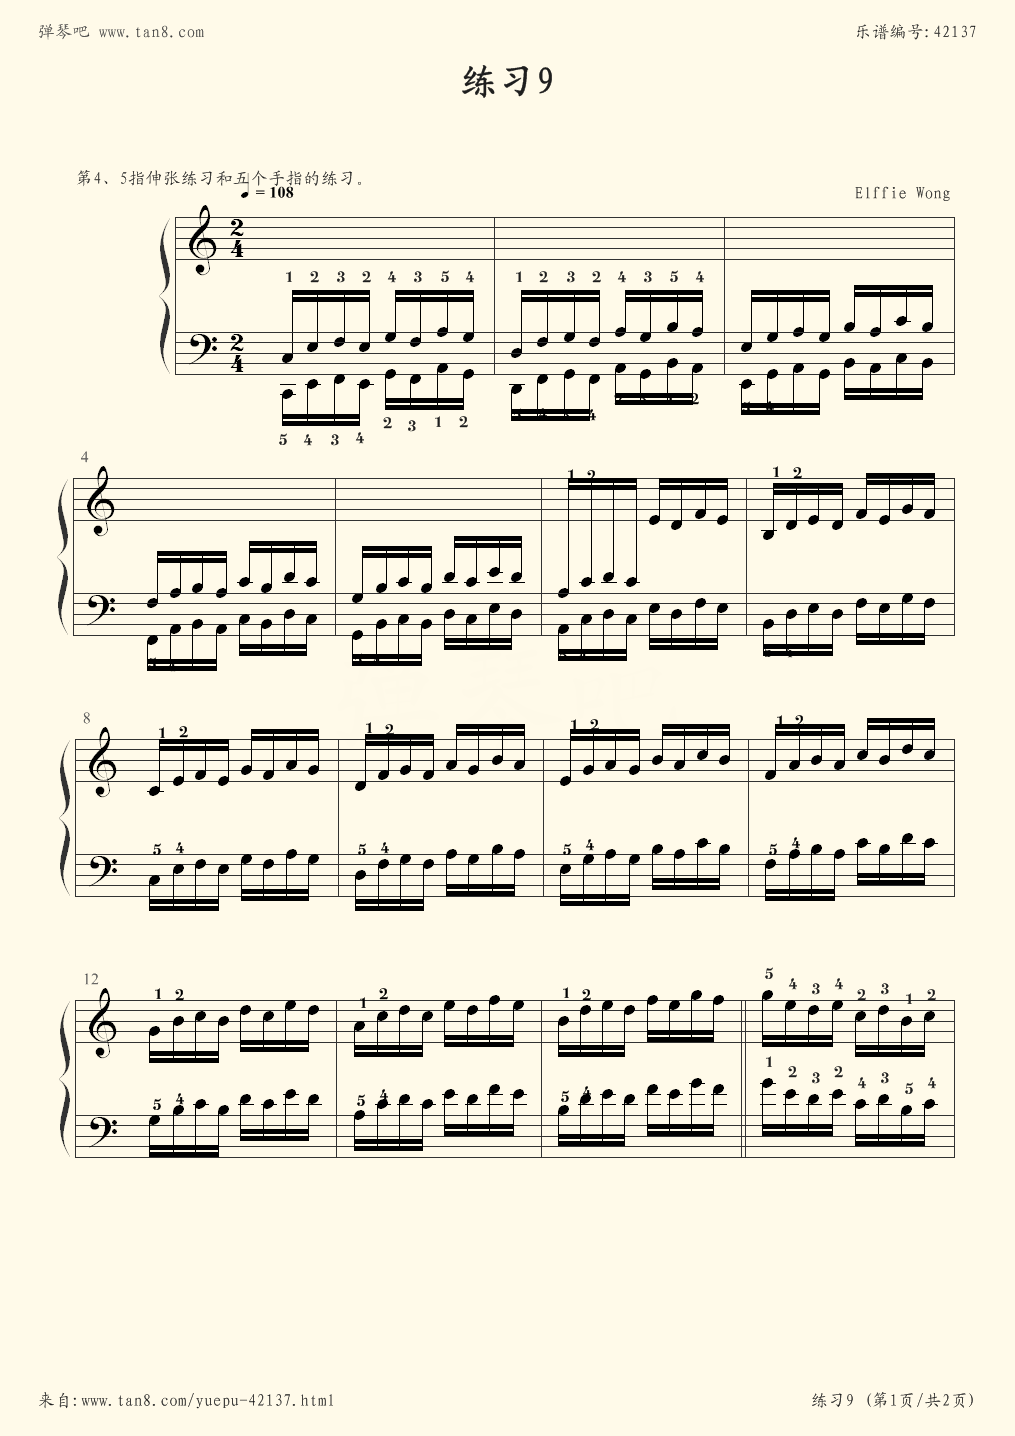 哈农钢琴指法练习视频(哈农钢琴练指法 pdf)